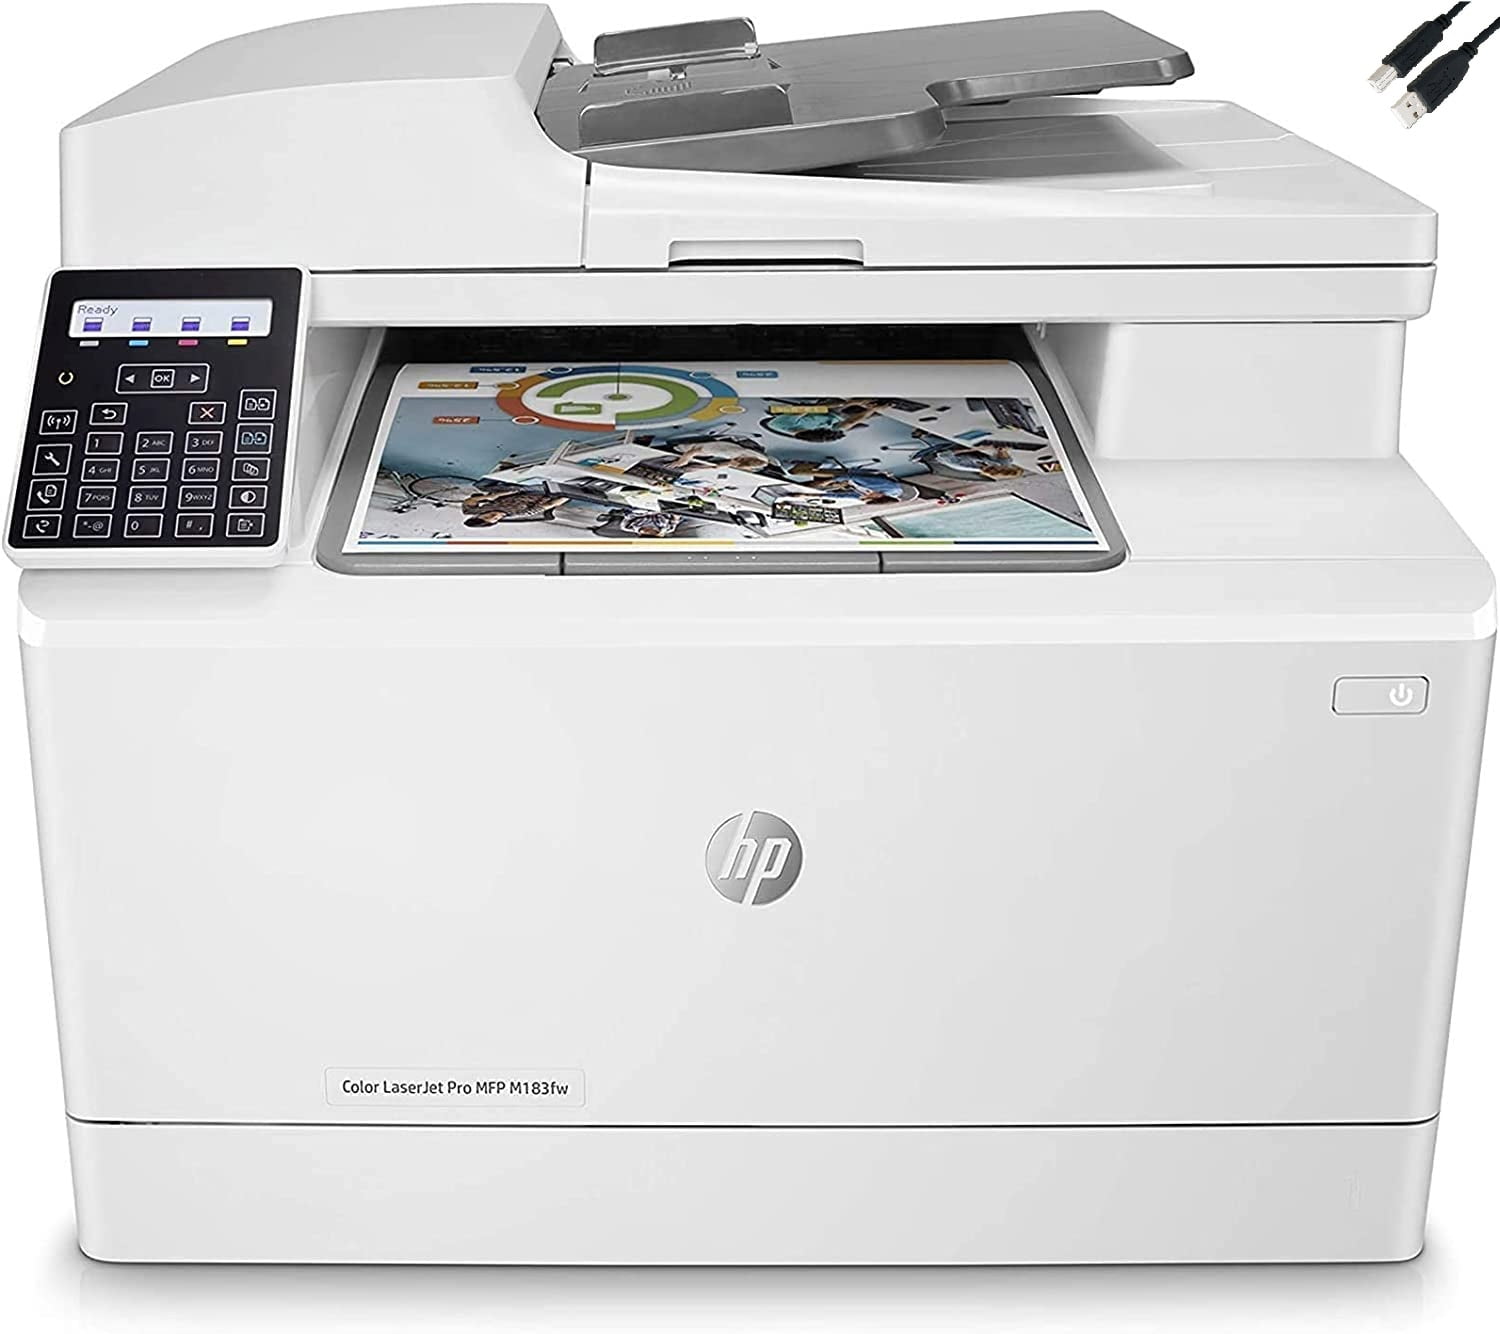 HP Officejet Pro 8720 - Imprimante multifonction - Garantie 3 ans LDLC